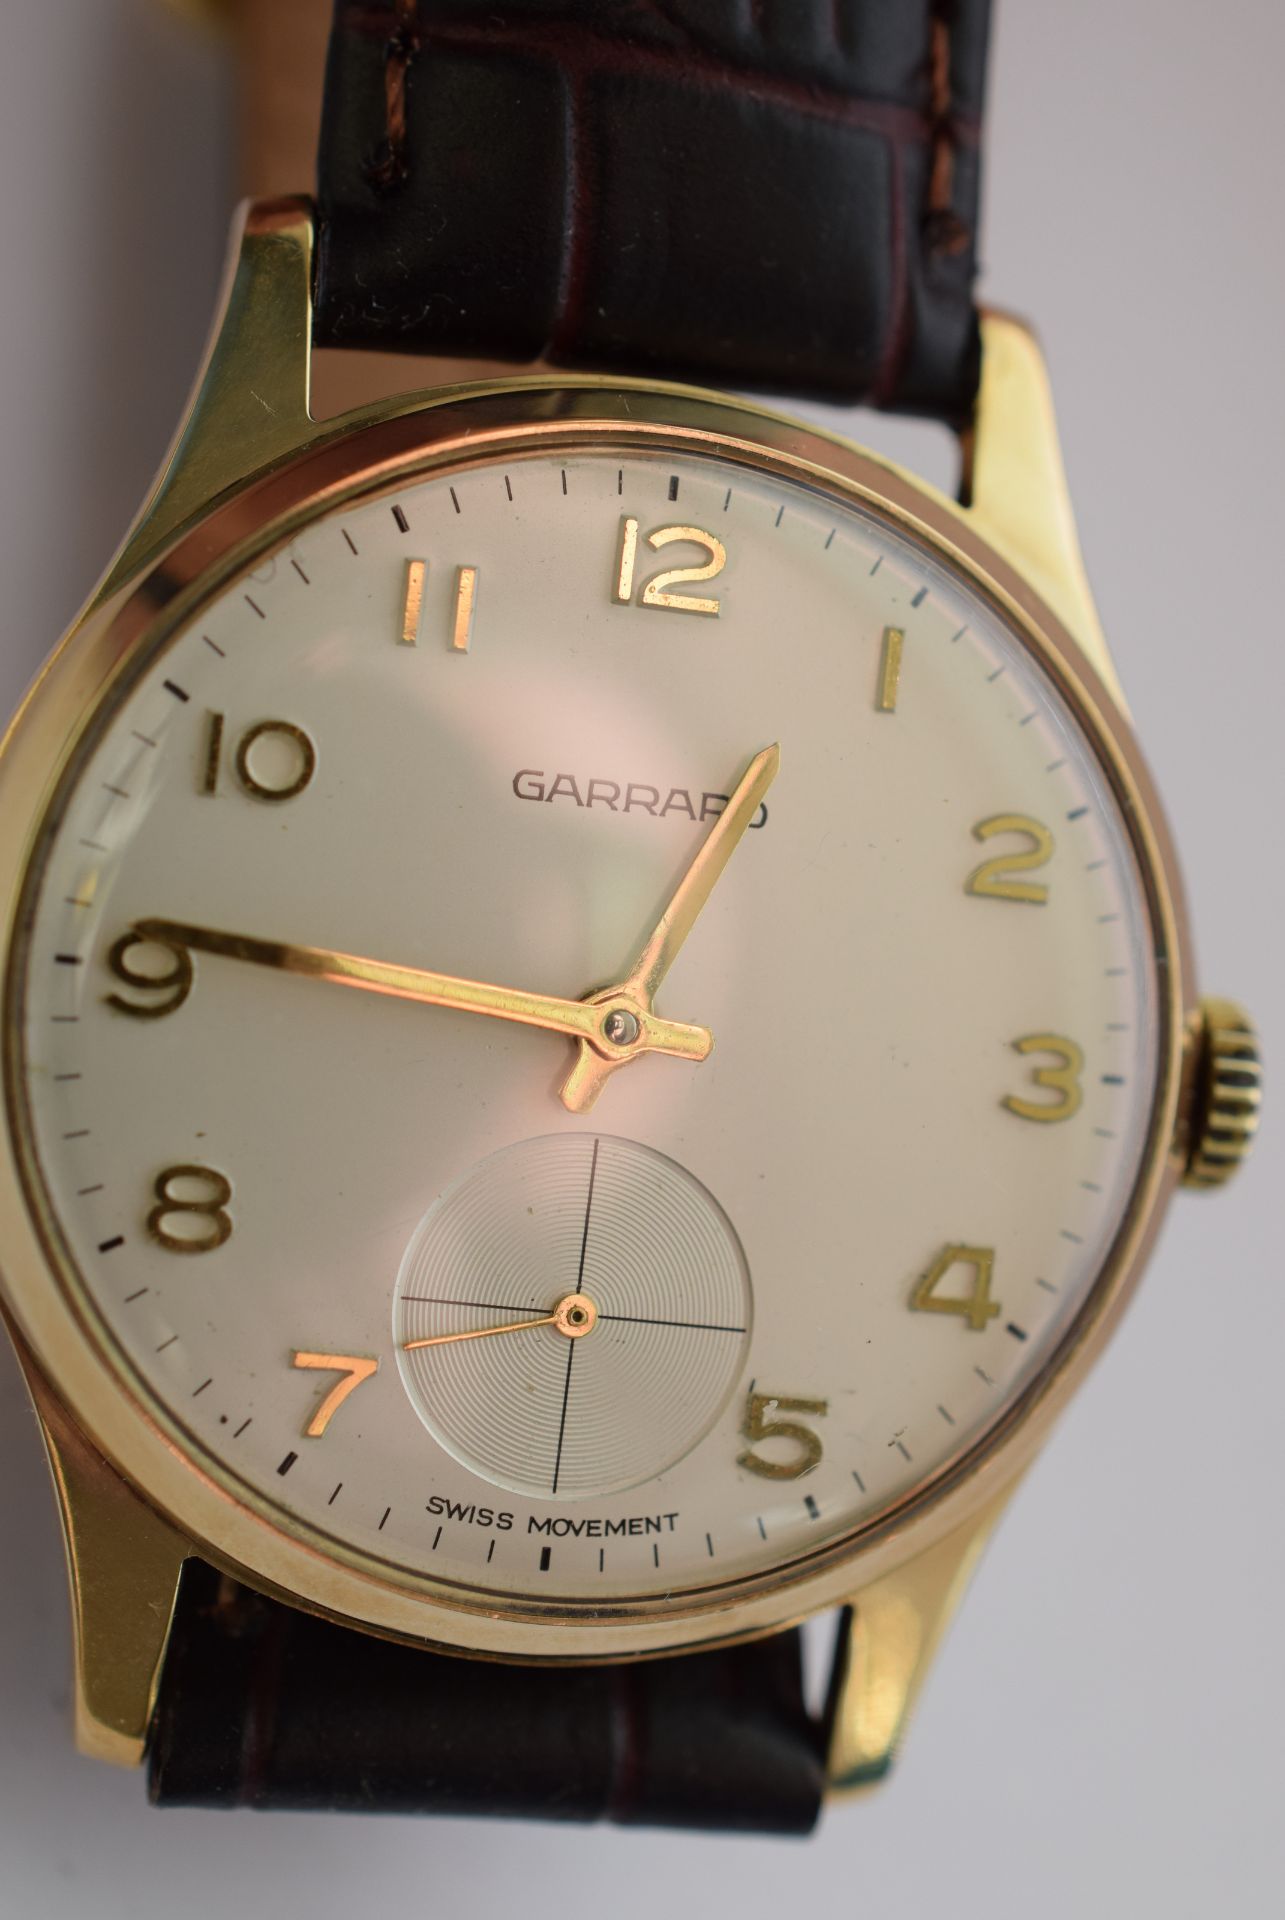 9ct Solid Gold Garrard Gentleman's Manual Wind Watch - Image 3 of 7